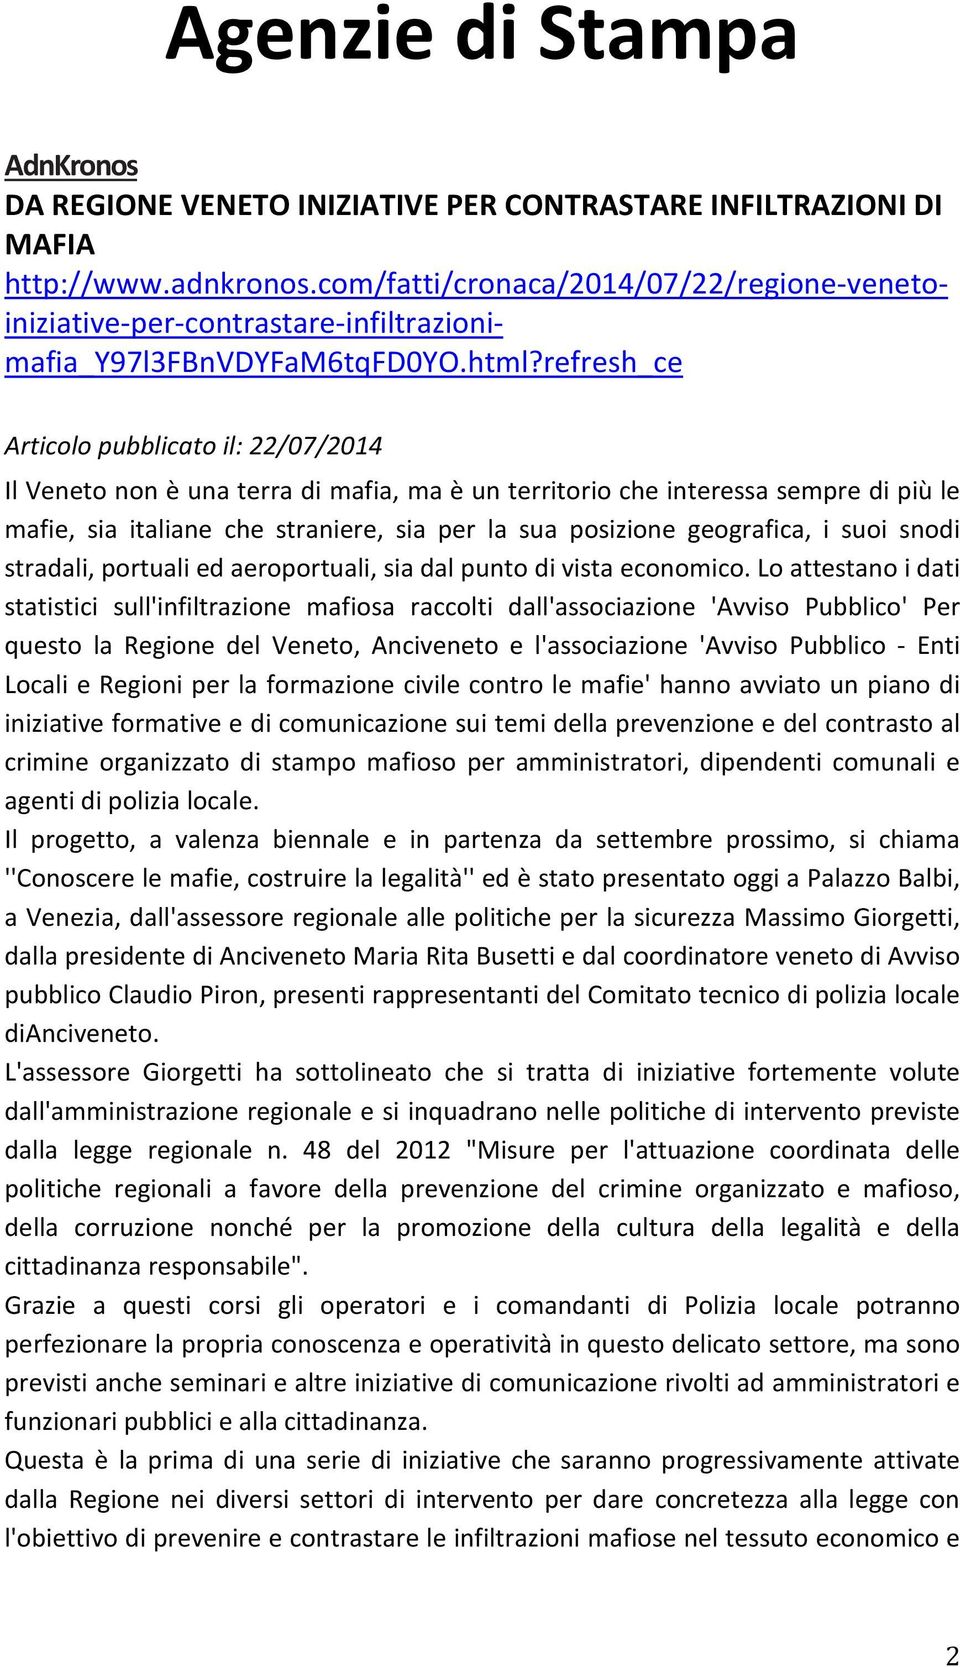 refresh_ce Articolo pubblicato il: 22/07/2014 Il Veneto non è una terra di mafia, ma è un territorio che interessa sempre di più le mafie, sia italiane che straniere, sia per la sua posizione